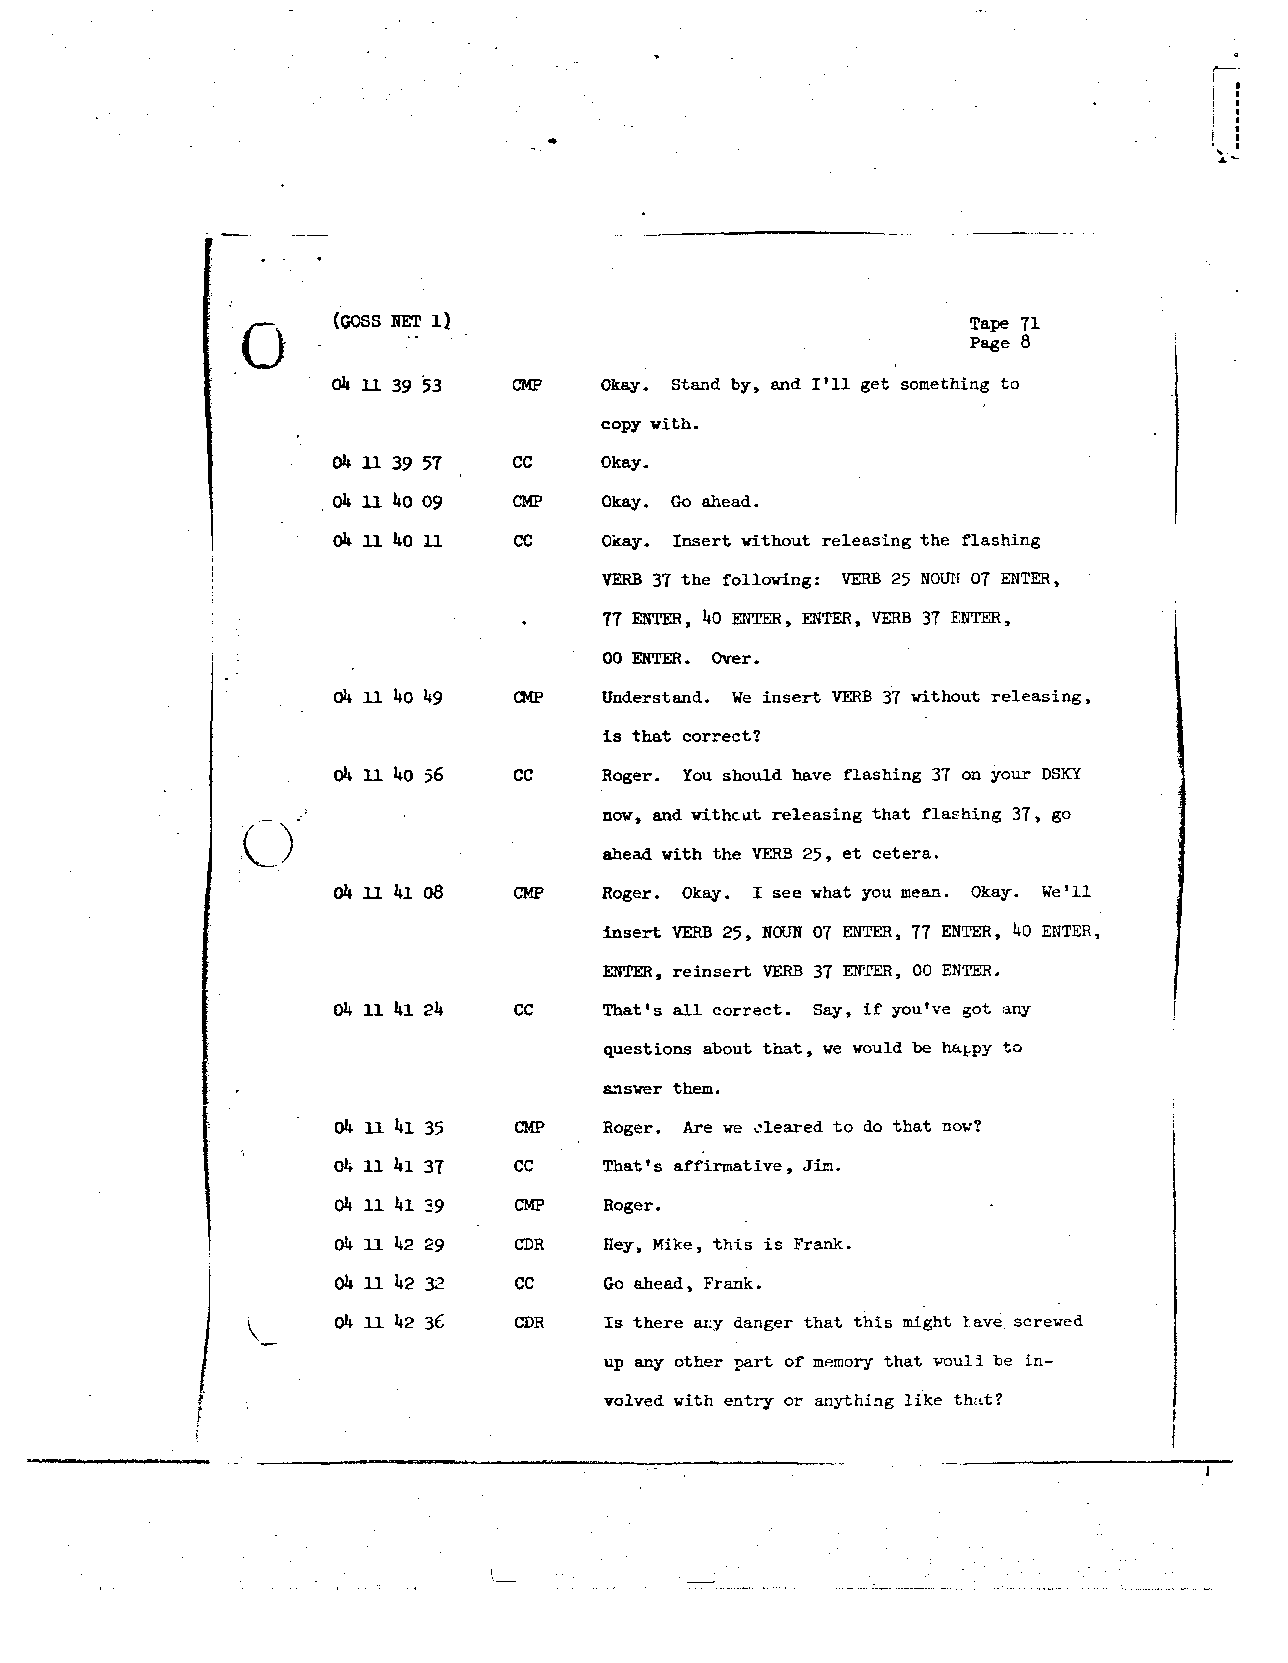 Page 571 of Apollo 8’s original transcript